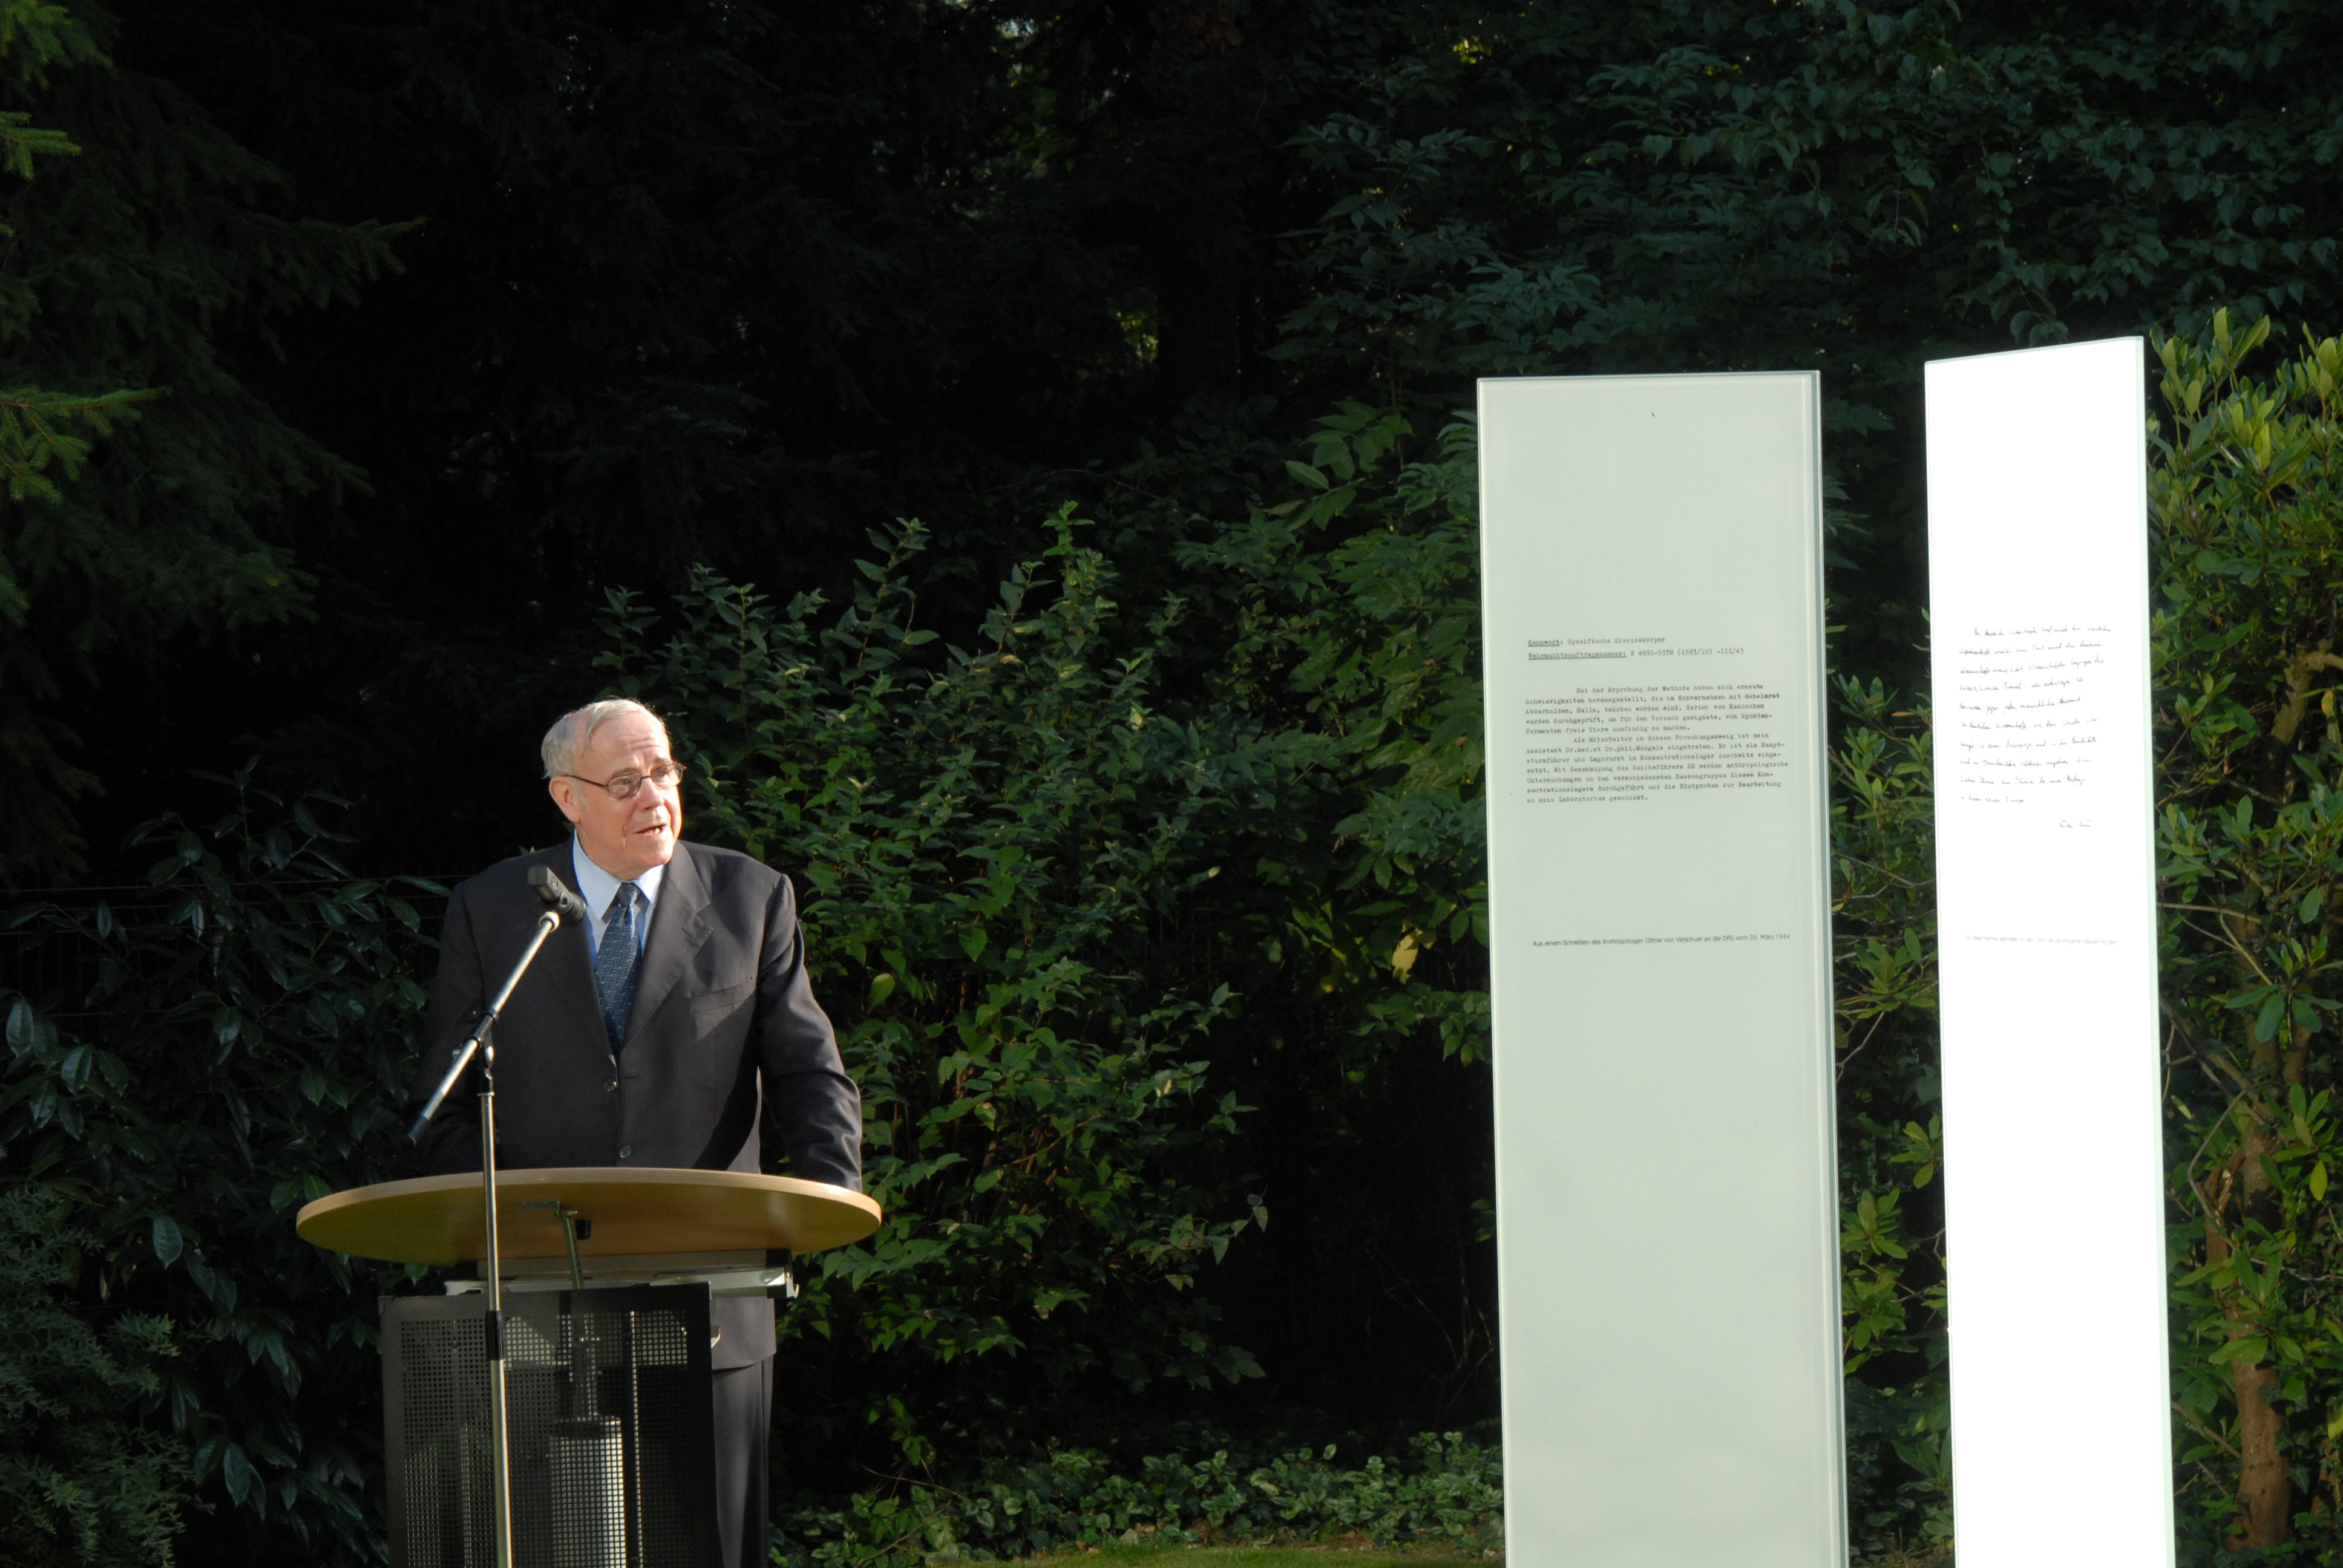 DFG-Präsident Ernst-Ludwig Winnacker spricht zur Einweihung des Mahnmals